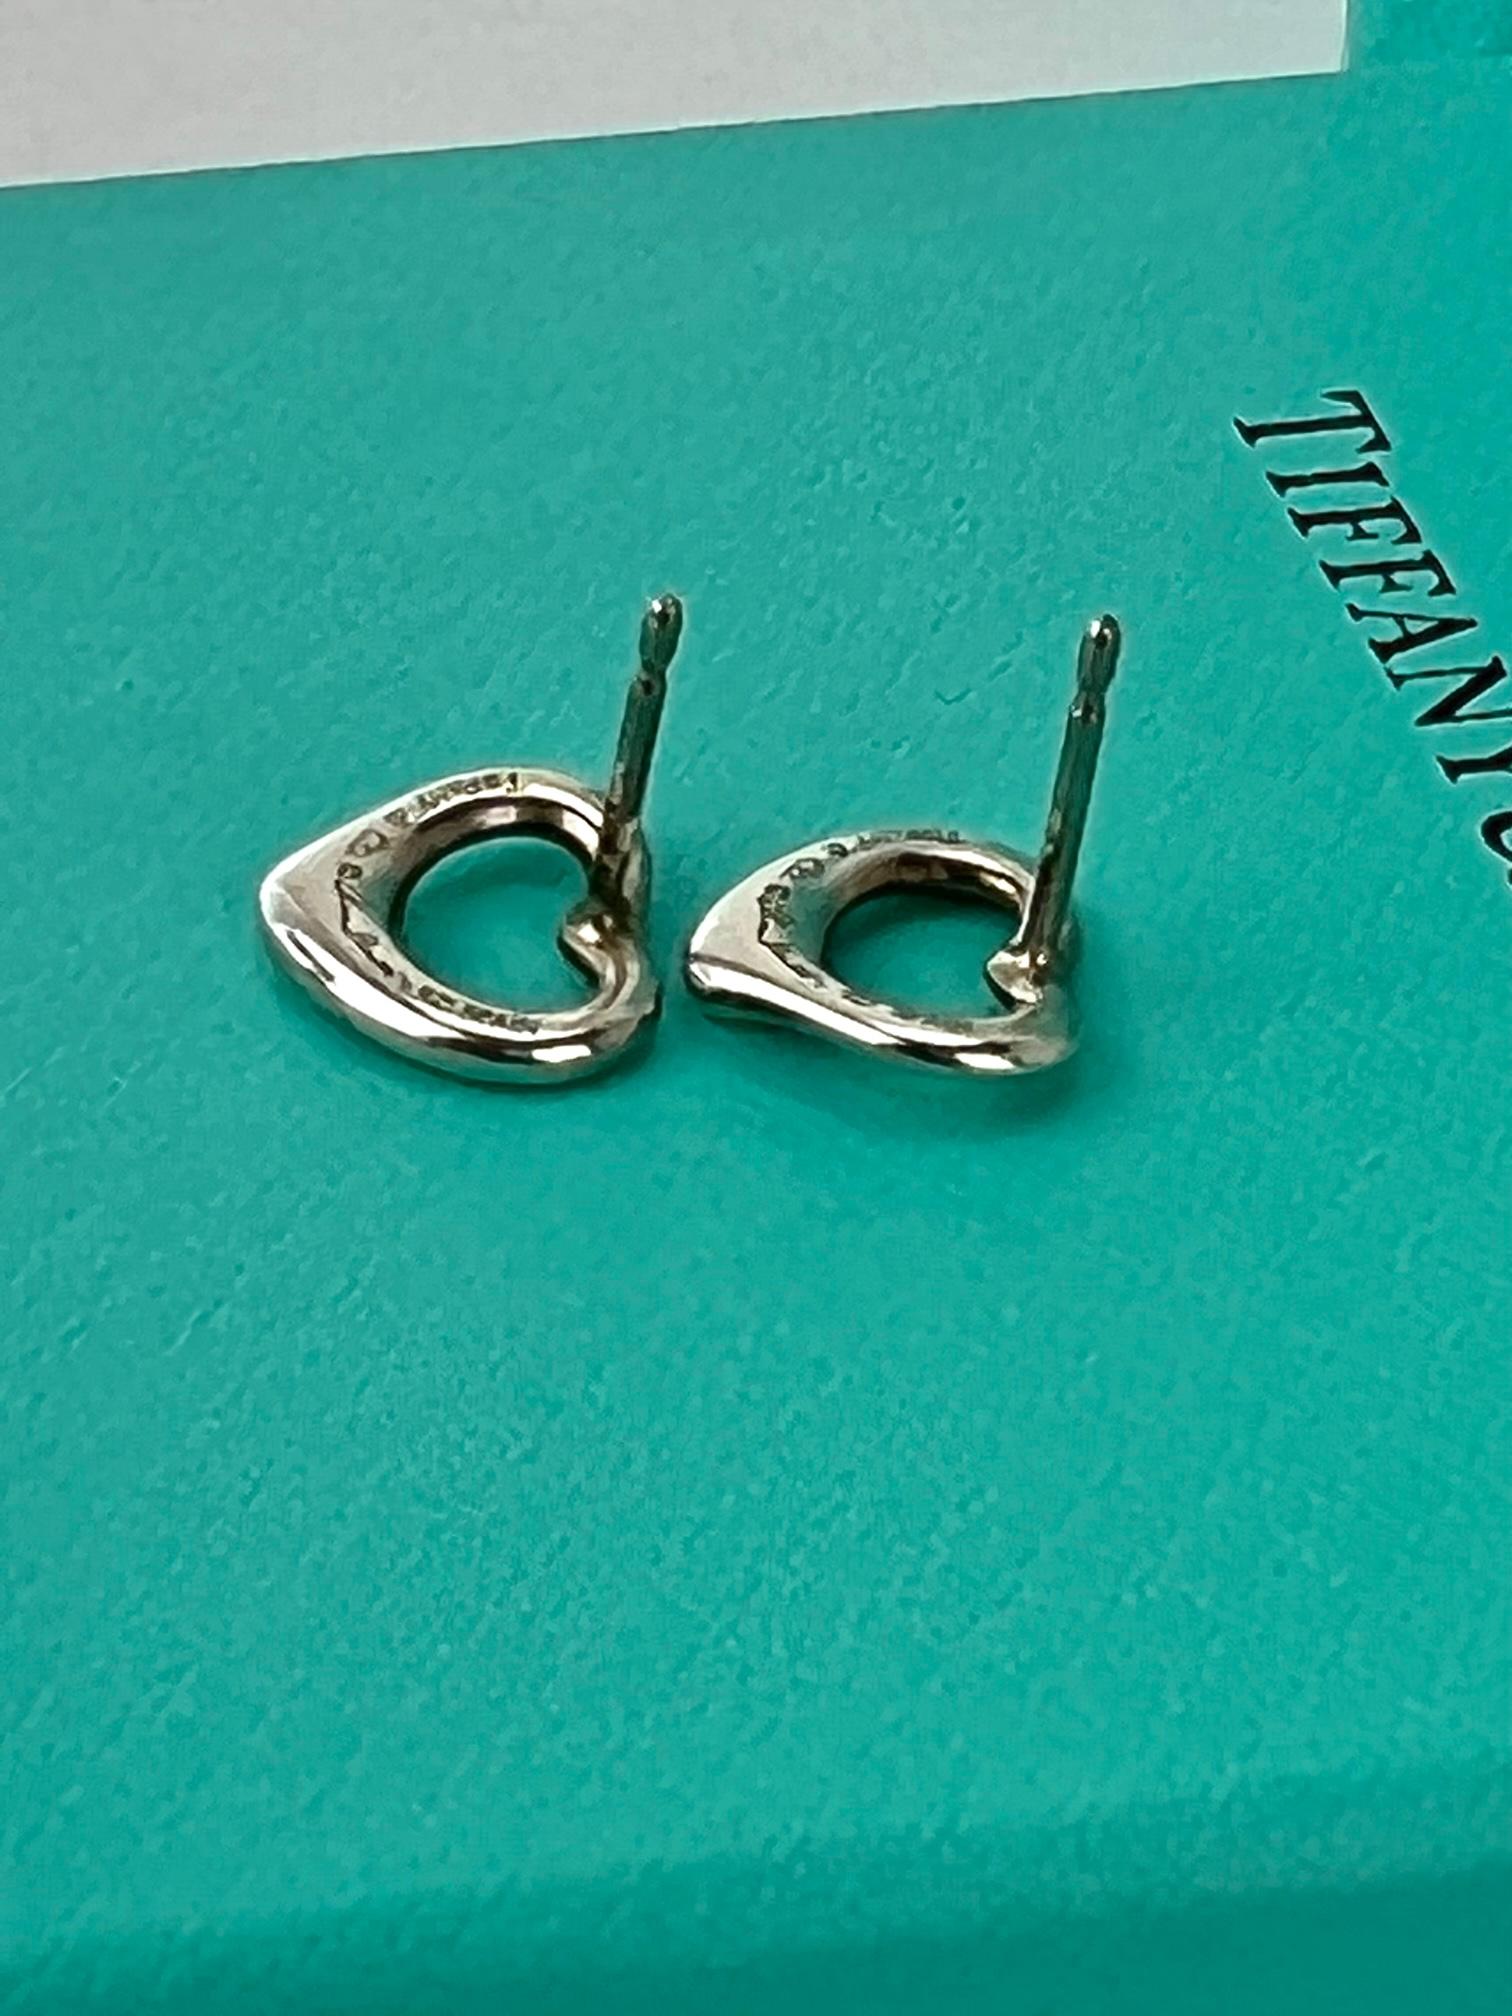  TIFFANY Open Heart Stud Earrings in Sterling Silver 925 Elsa Peretti  1